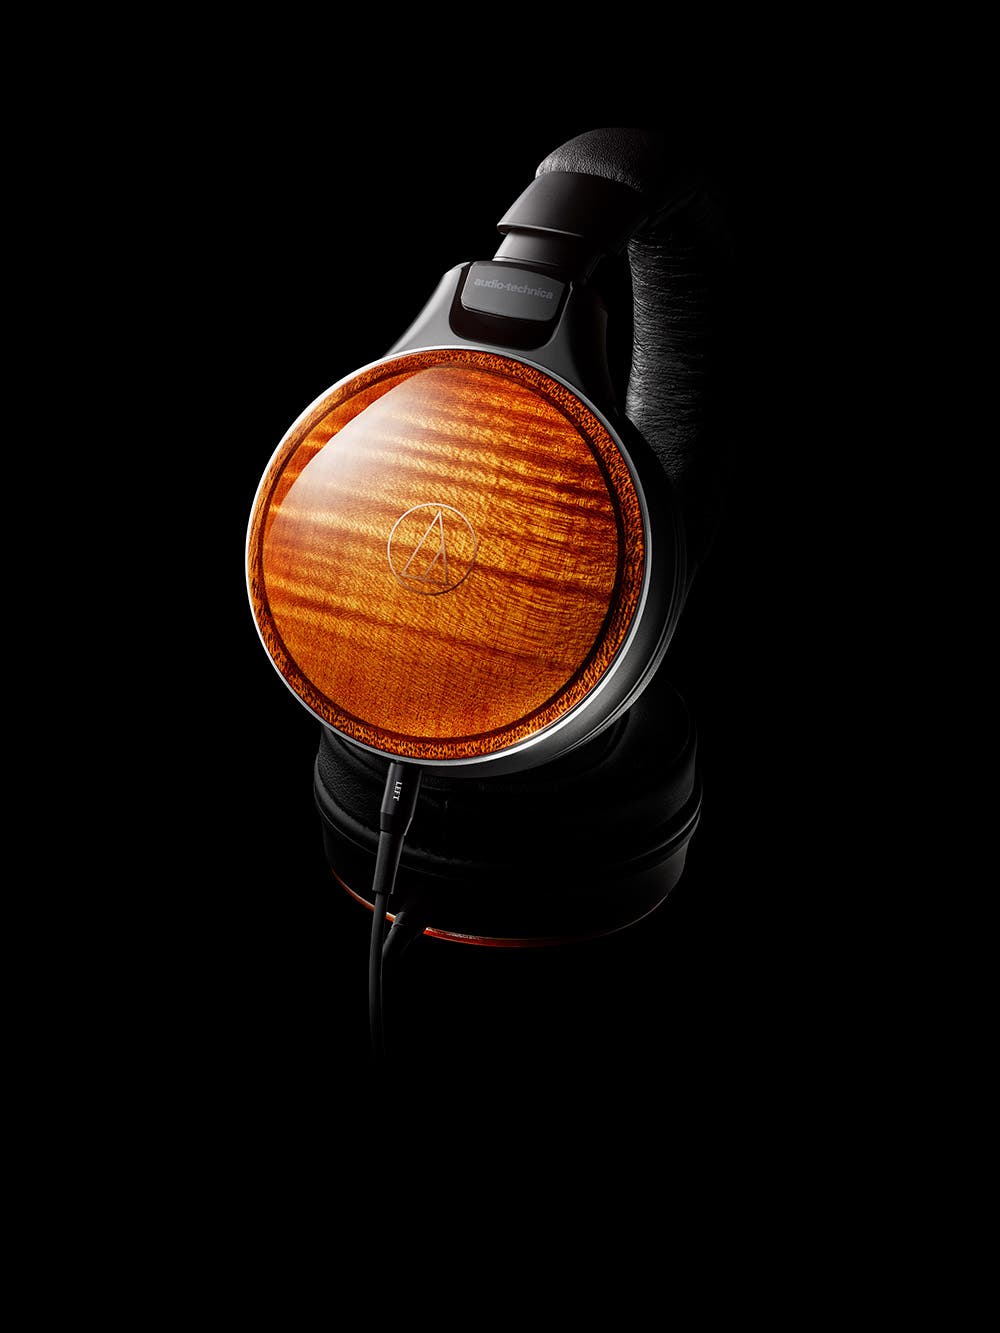 Audio-Technica offre la grande clarté du son analogique à l’édition limitée de ses iconiques casques en bois 